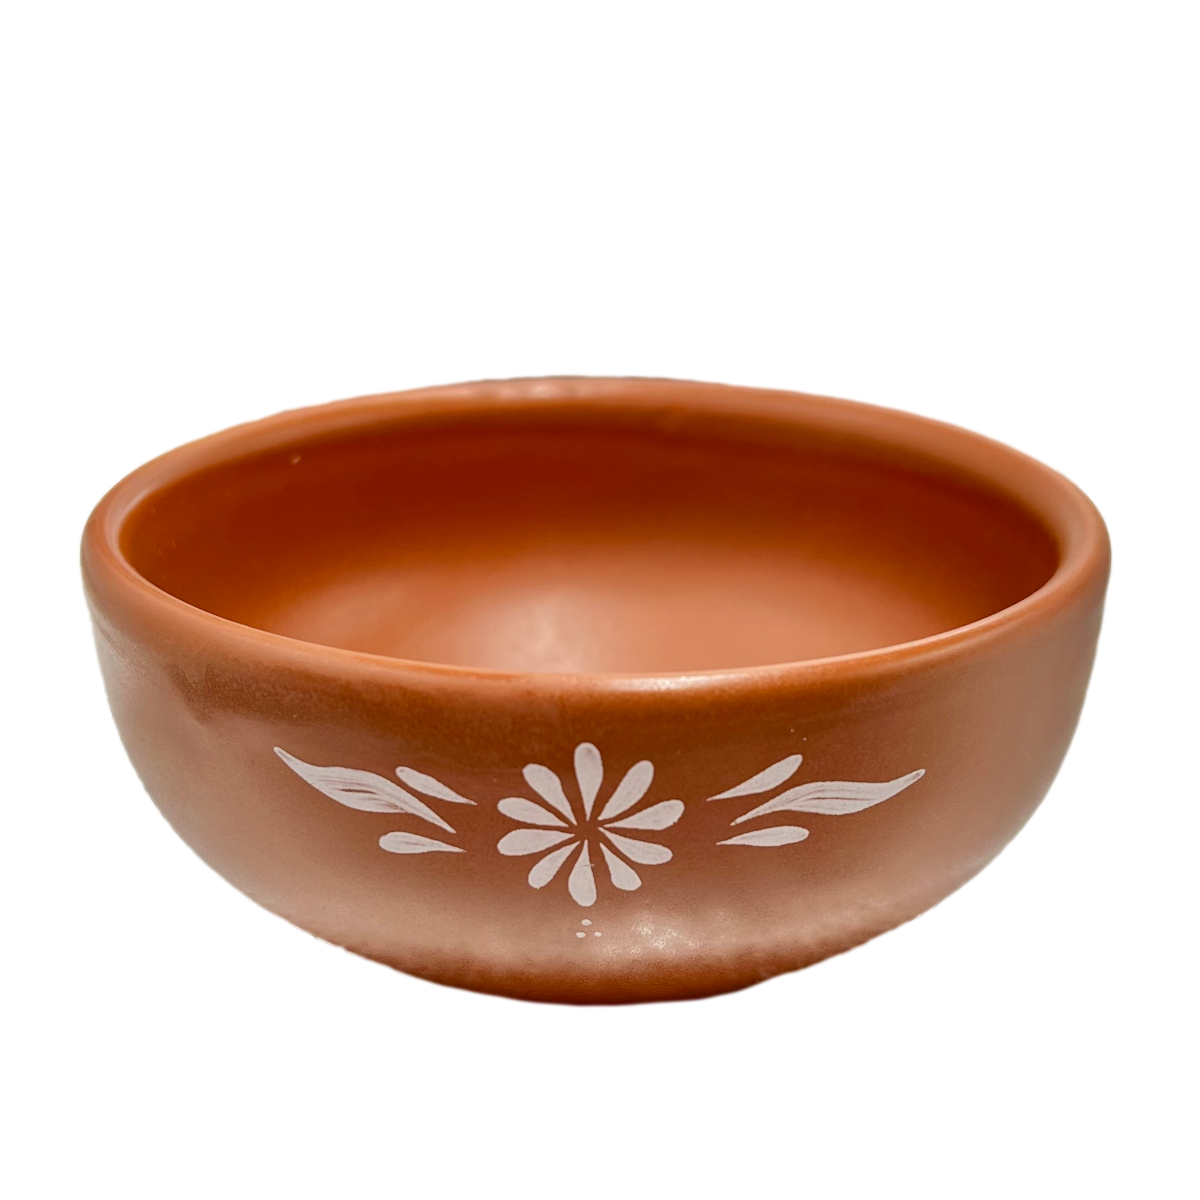 Mexican Porcelain Puebla Dinnerware Collection- Soup Bowl 5" 13 ounces MeXican Artisan Fashion & Design